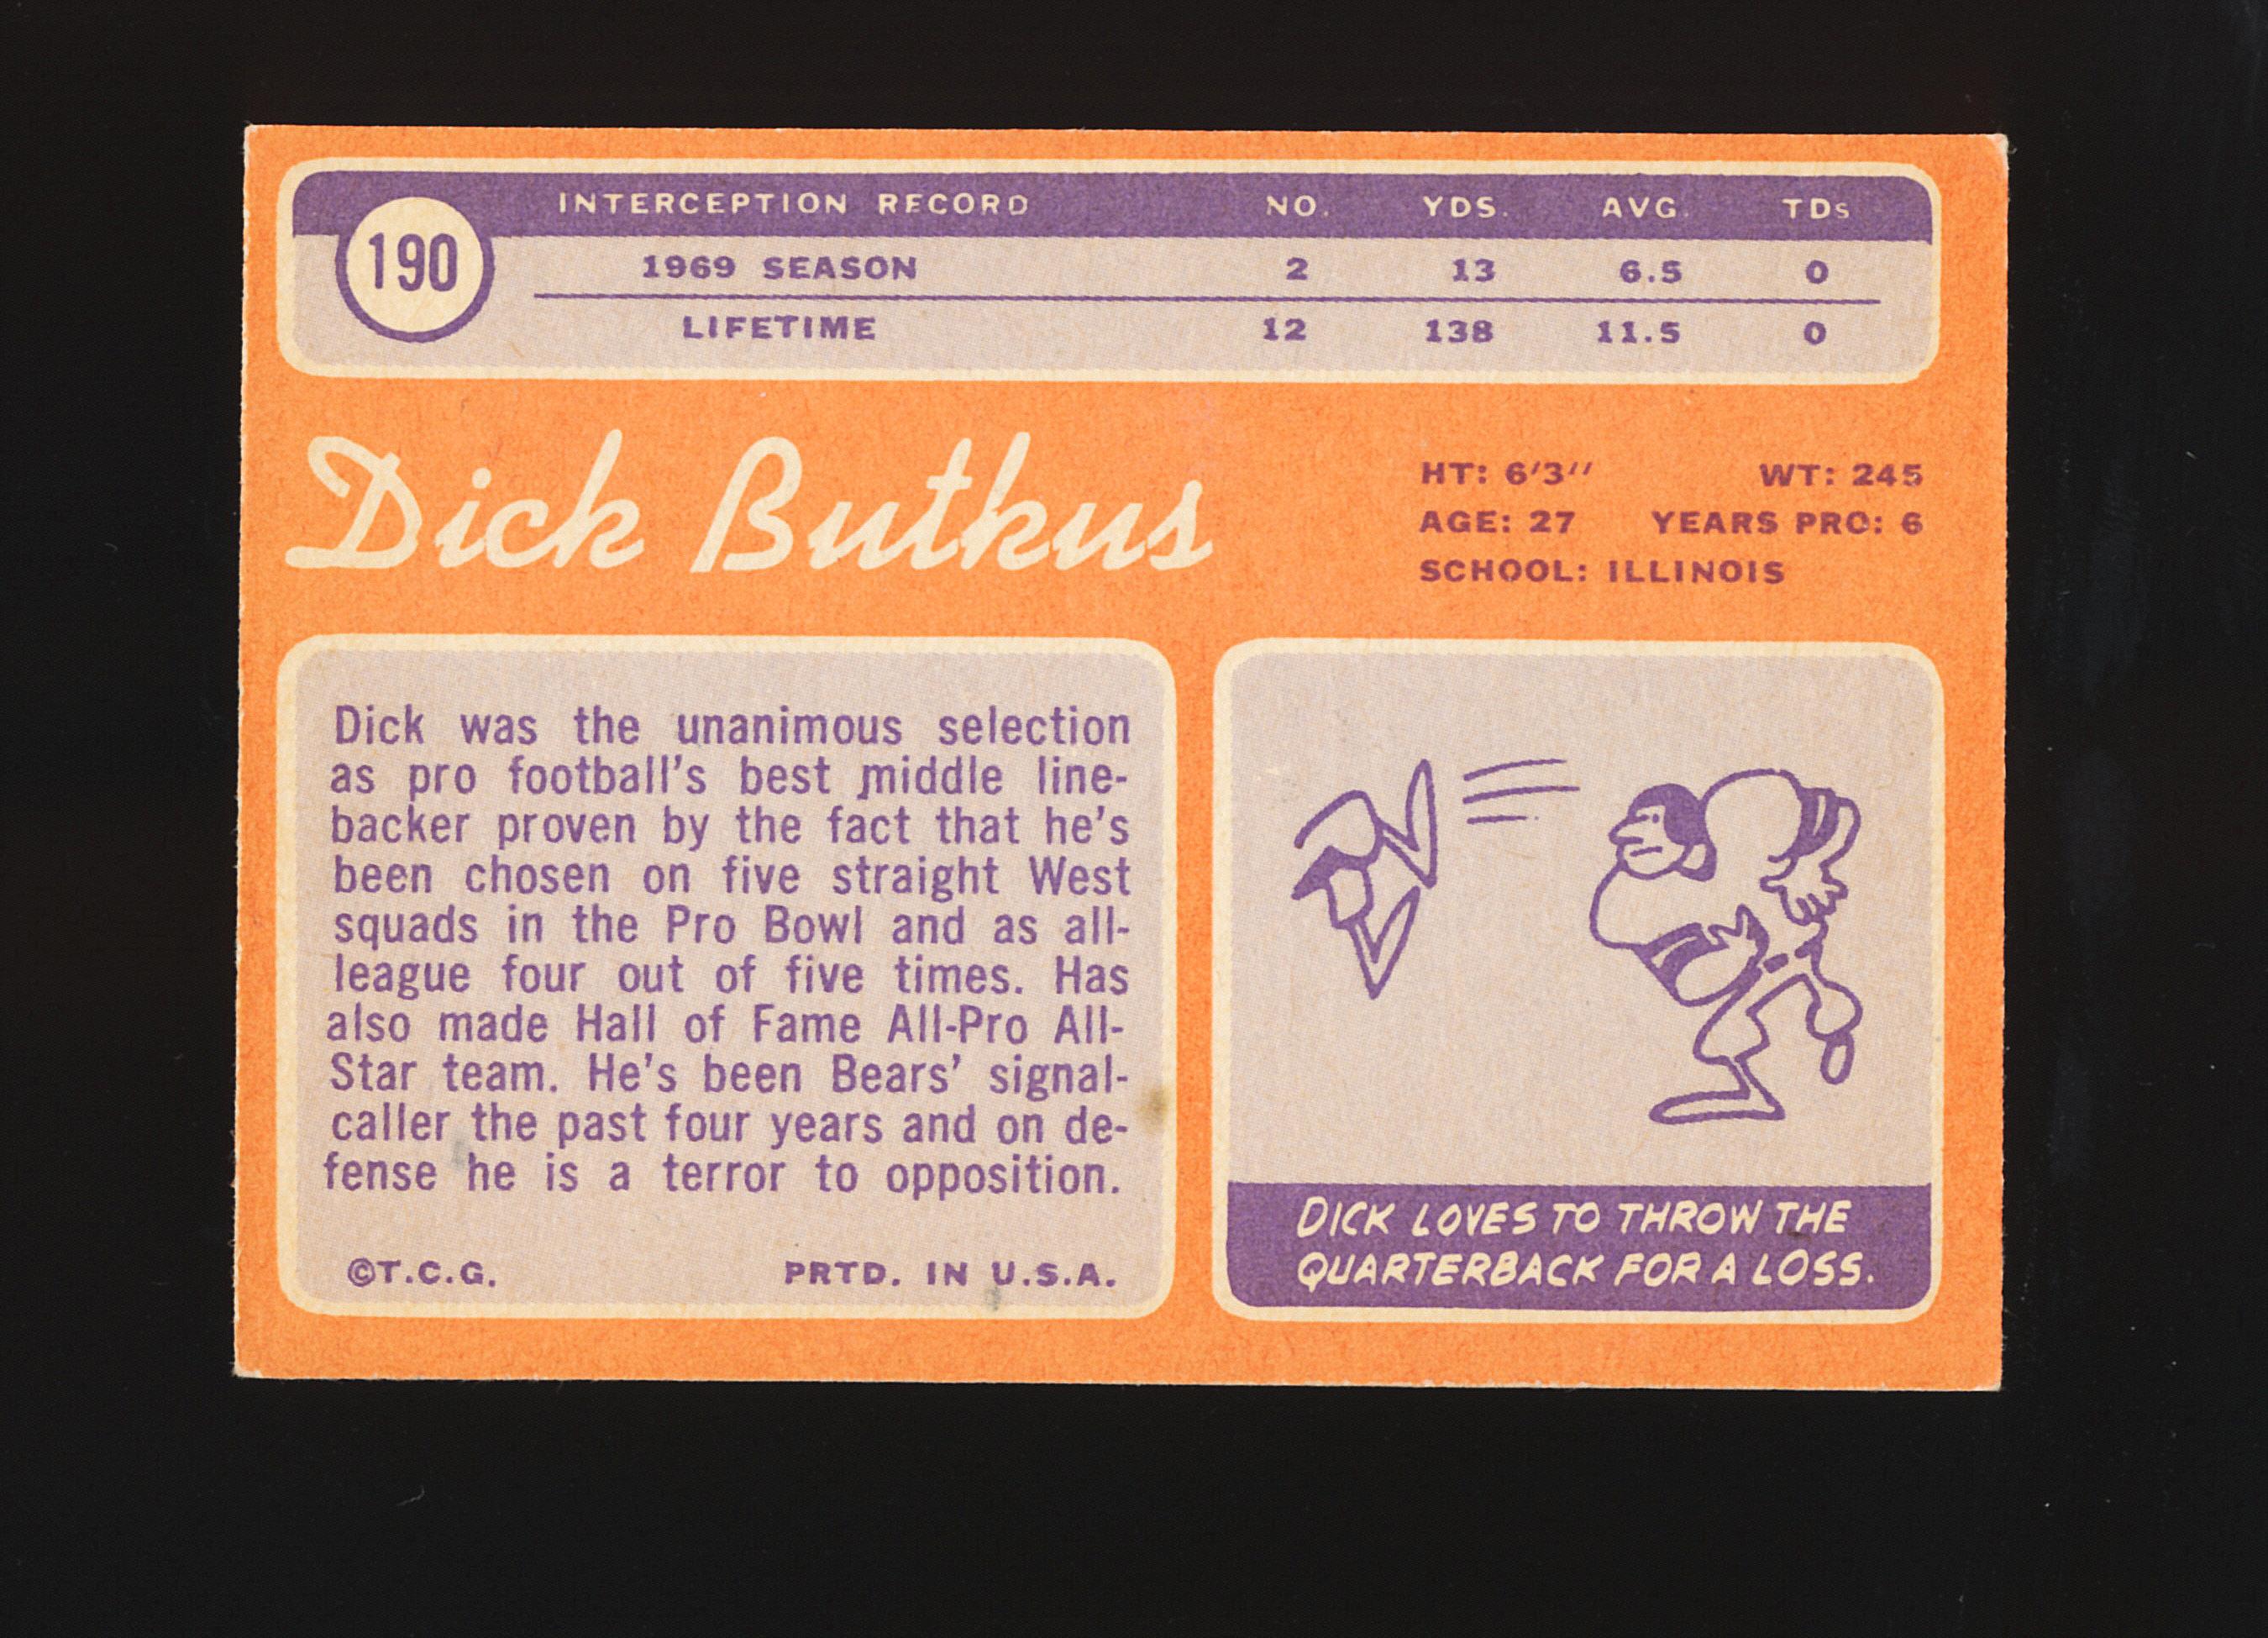 1970 Topps Football Card #190 Hall of Famer Dick Butkus Chicago Bears